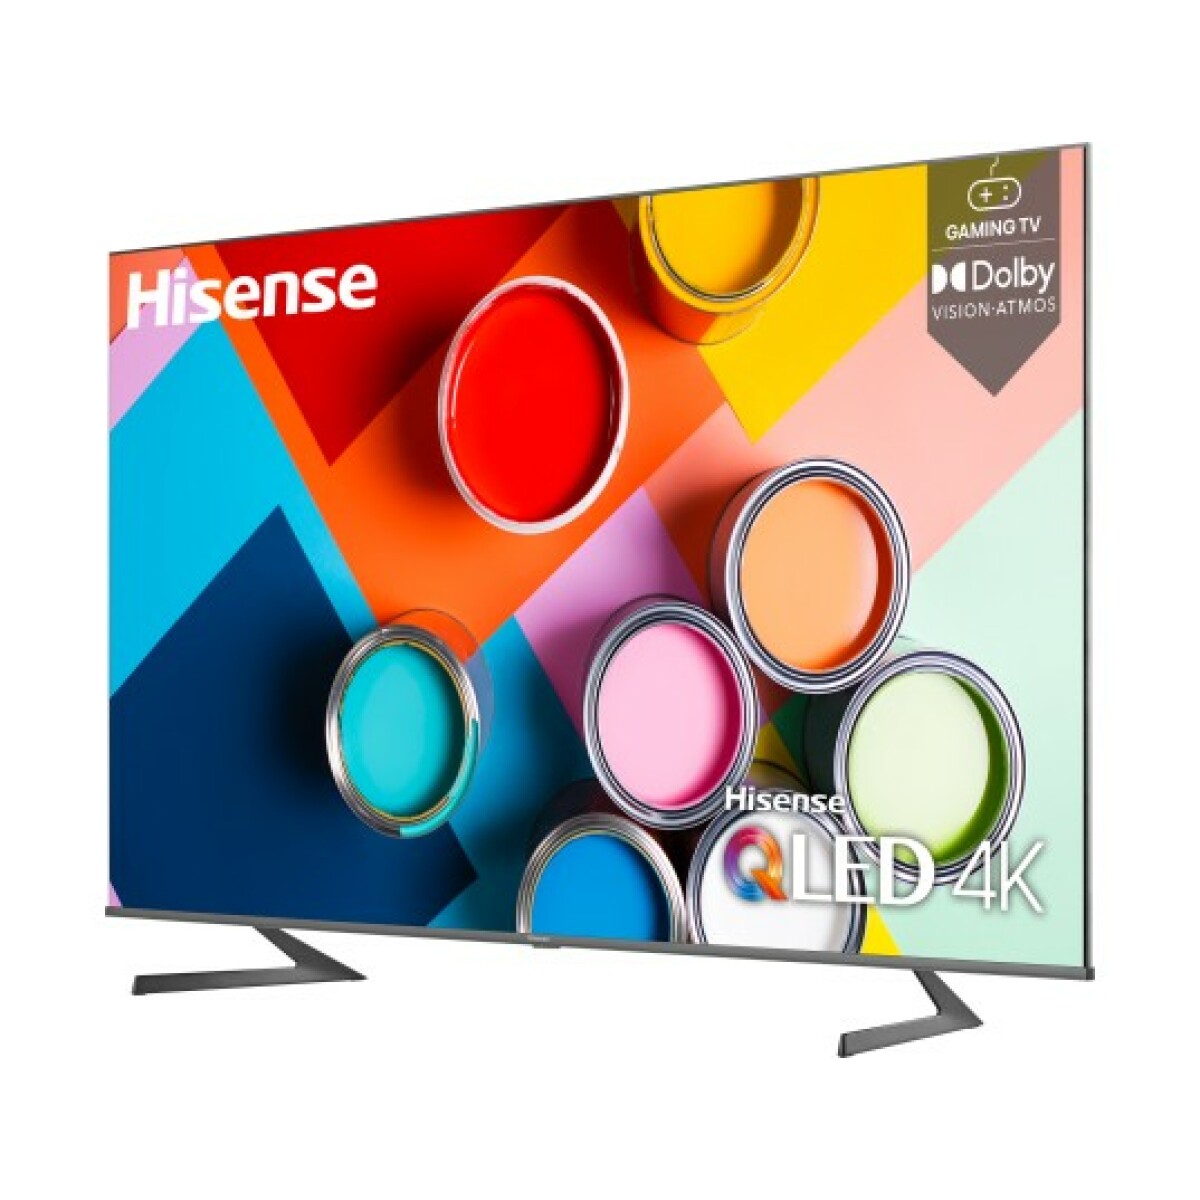 Hisense TV QLED 4K 190 cm 75A7GQ - Dolbyt Atmos - écran sans bord